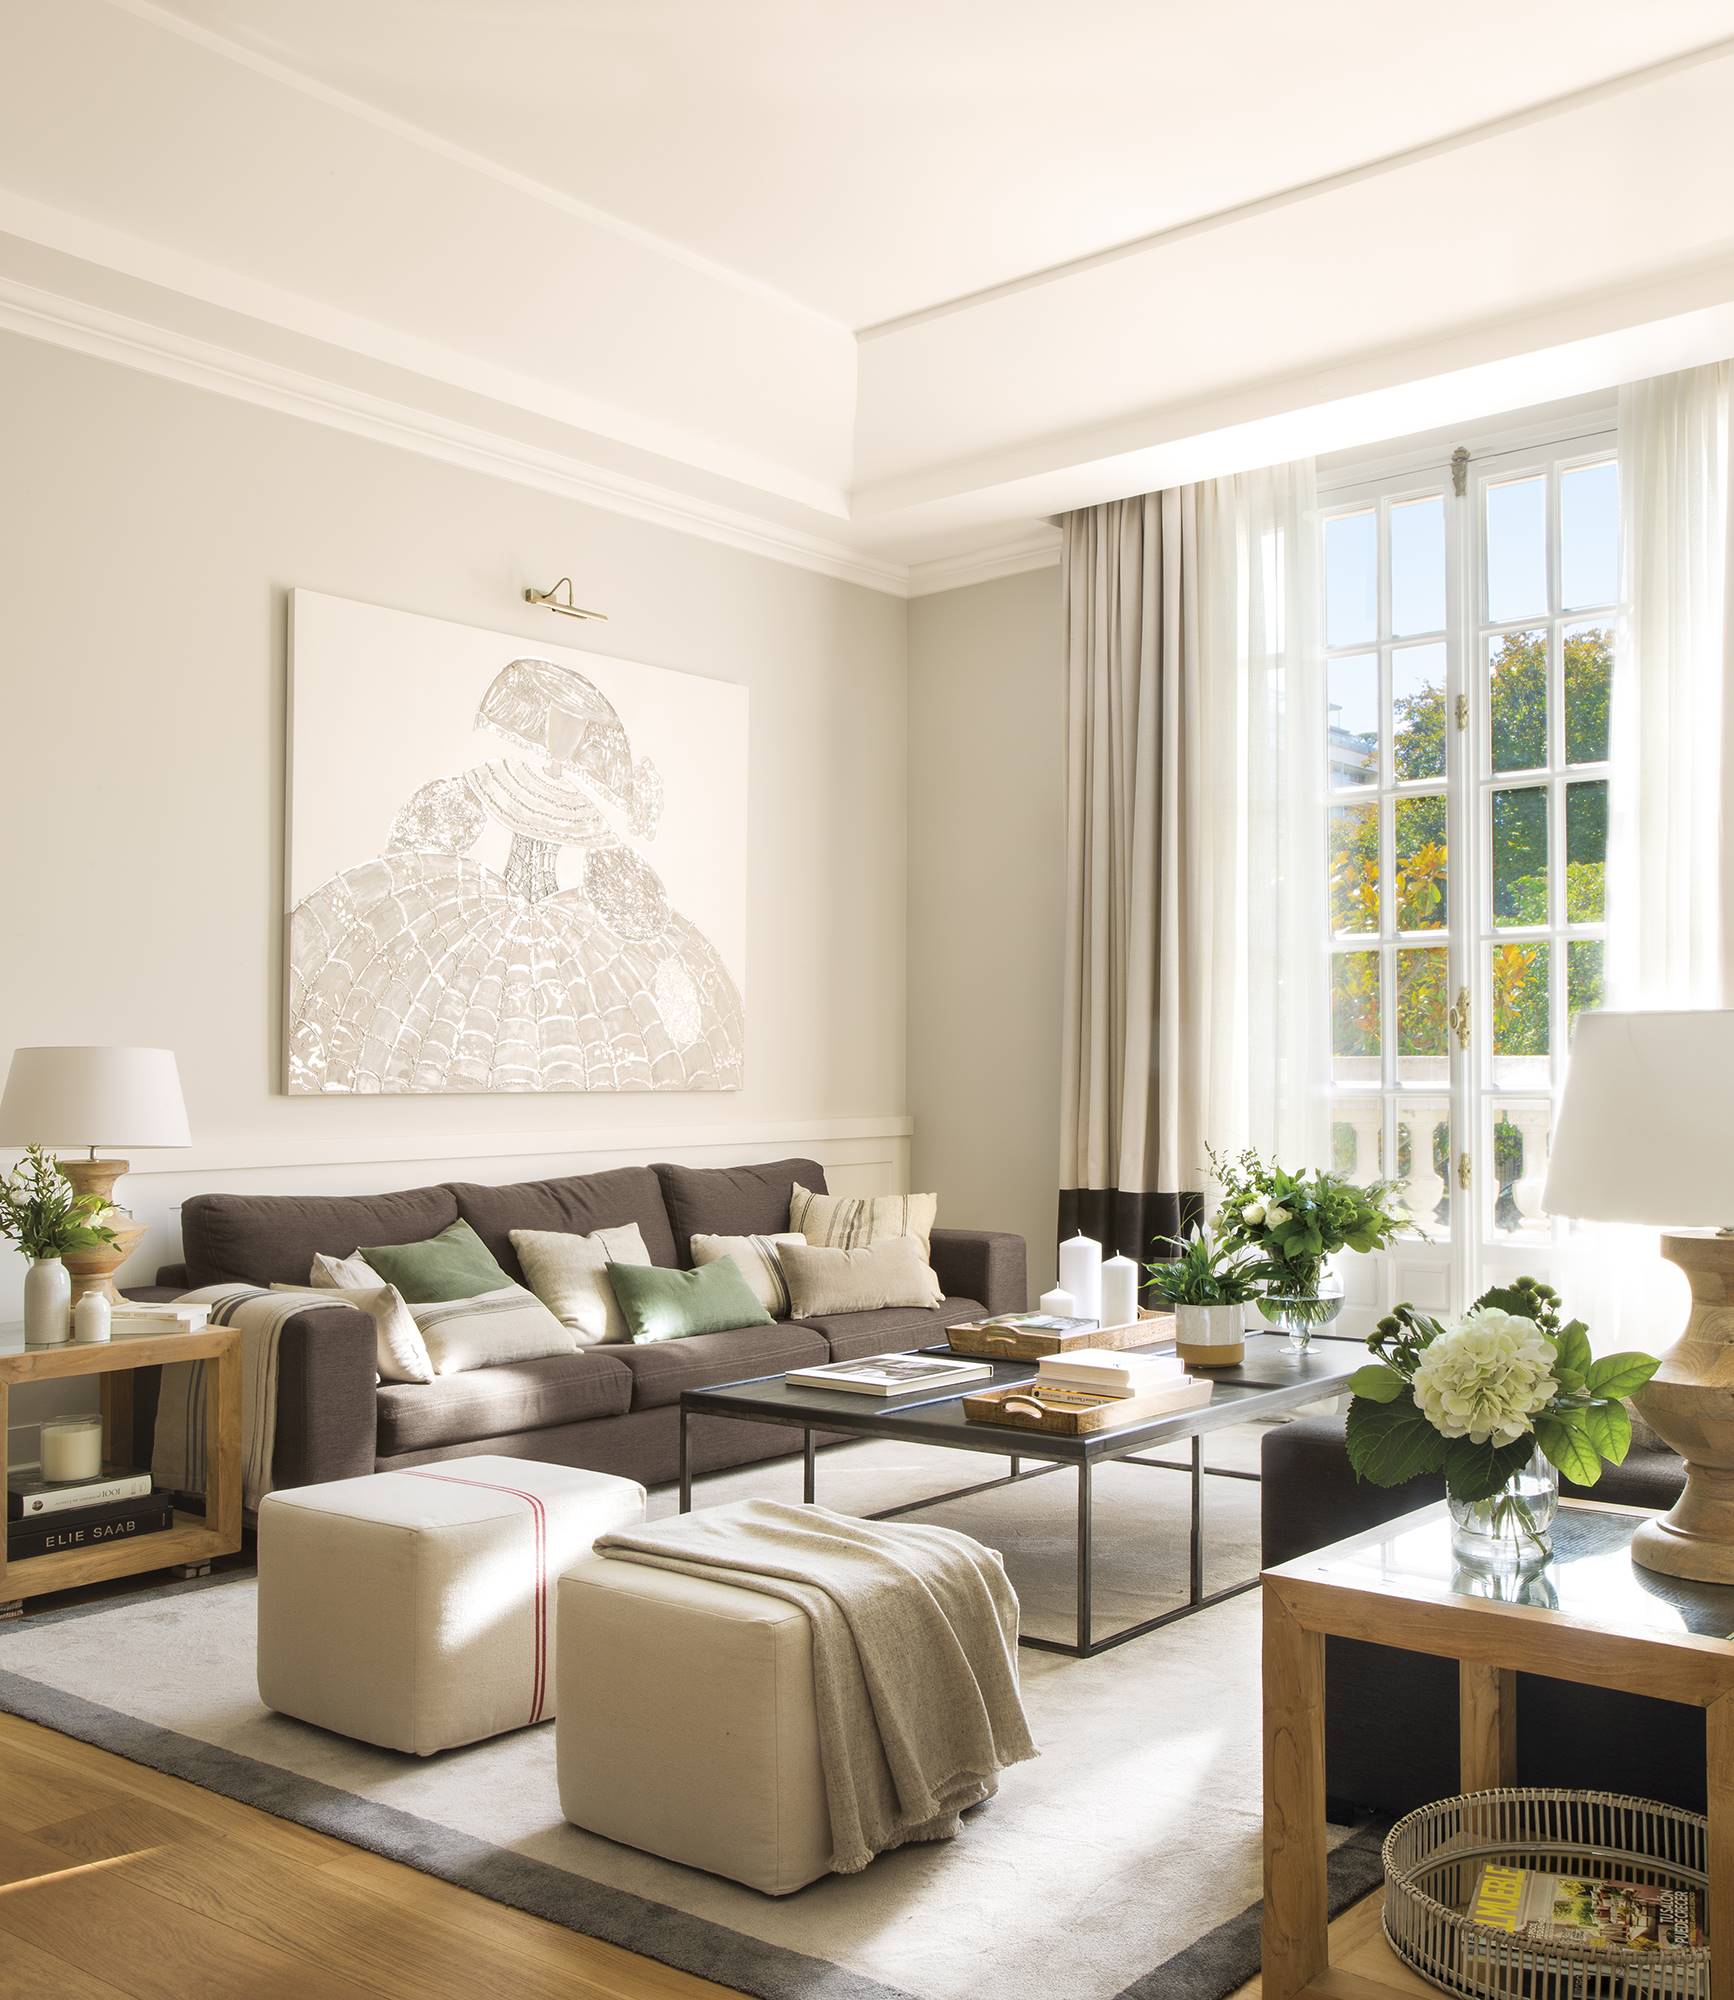 Salón señorial con dos sofás grises enfrentados y gran ventanal acristalado con cuarterones